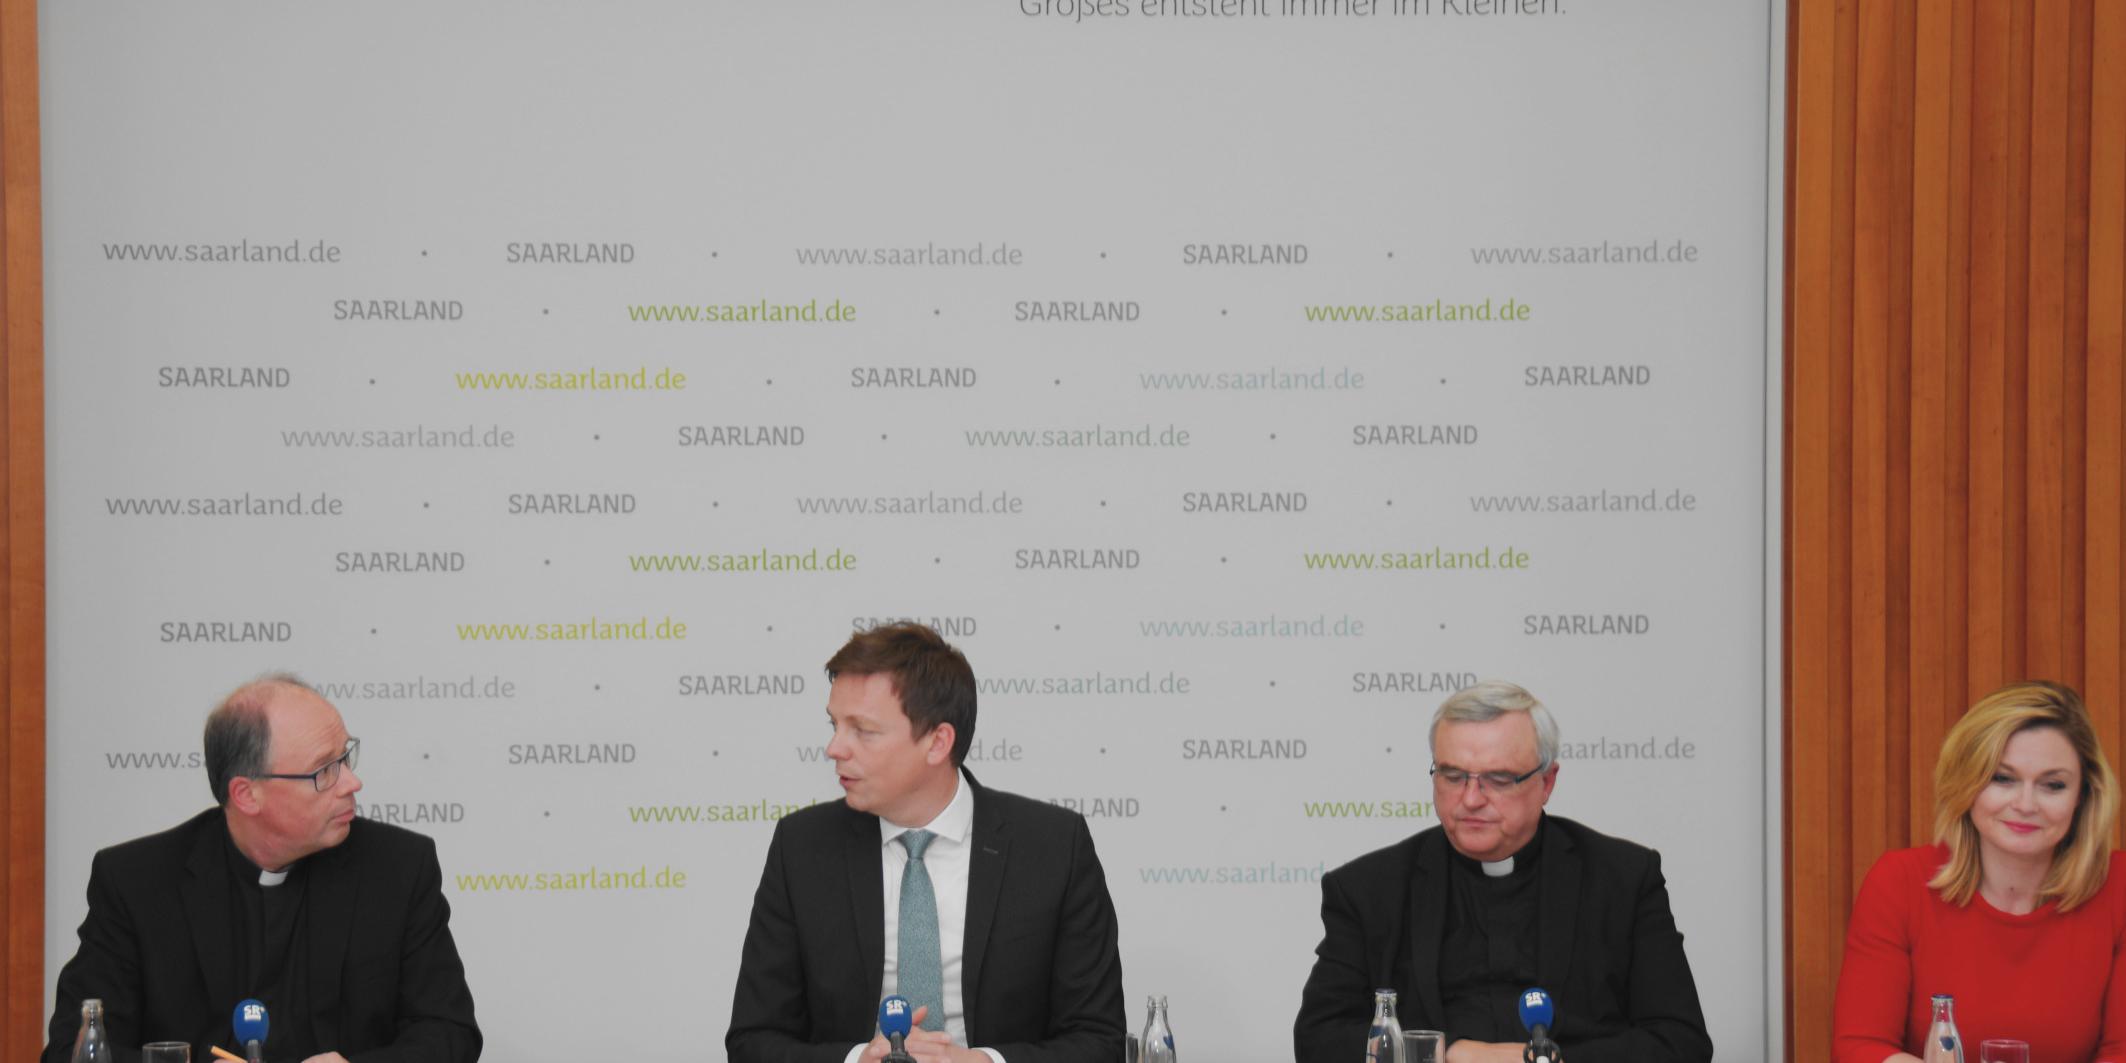 Bischof Stephan Ackermann (l.) und Bischof Karl-Heinz Wiesemann (2.v.r.) stellten sich zusammen mit Ministerpräsident Tobias Hans (2.v.l.) im Anschluss an das Gespräch den Fragen von Reportern.